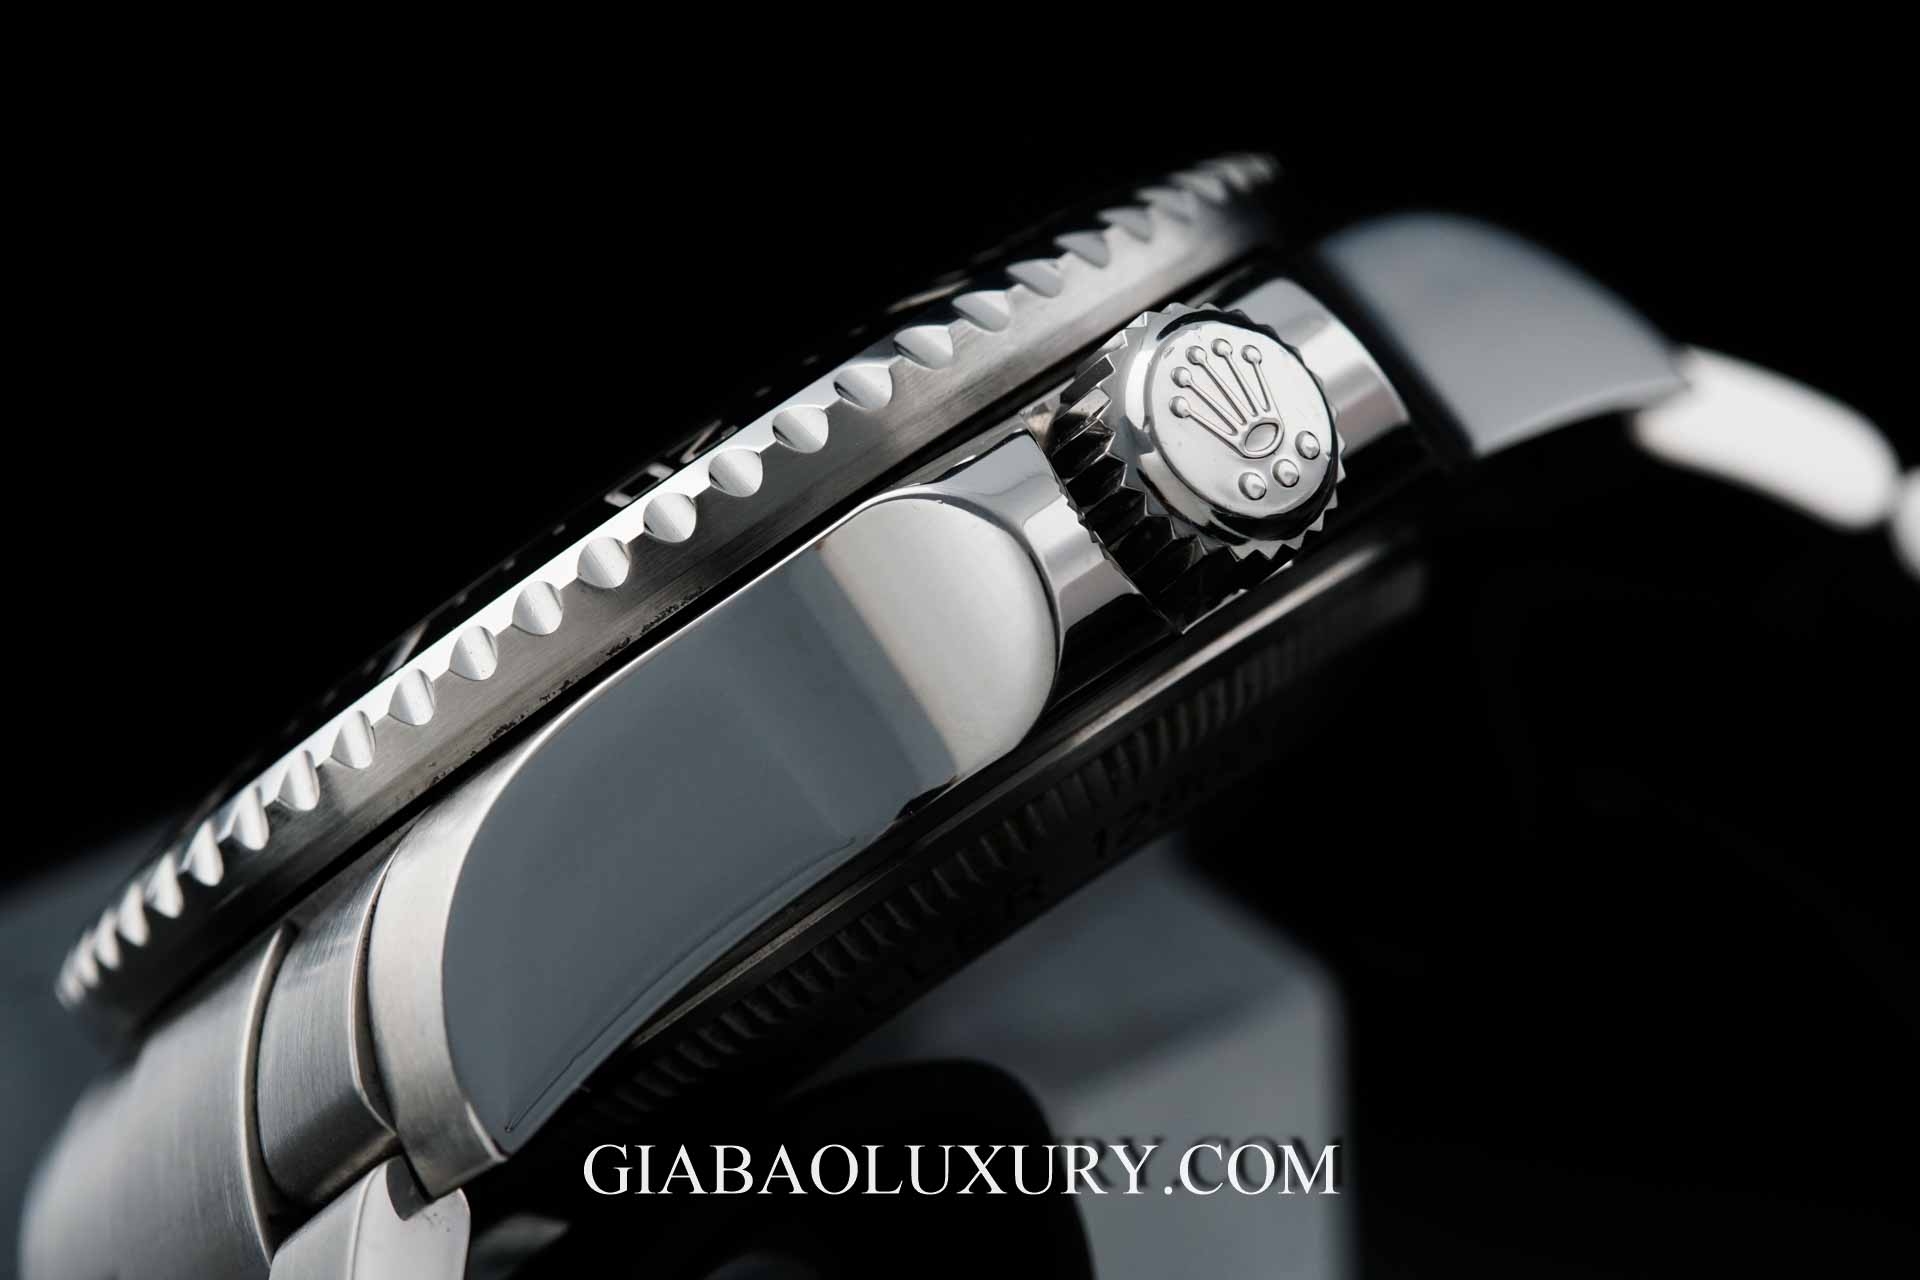 Bí mật về những chấm nhỏ trên núm vặn chỉnh giờ trên đồng hồ Rolex